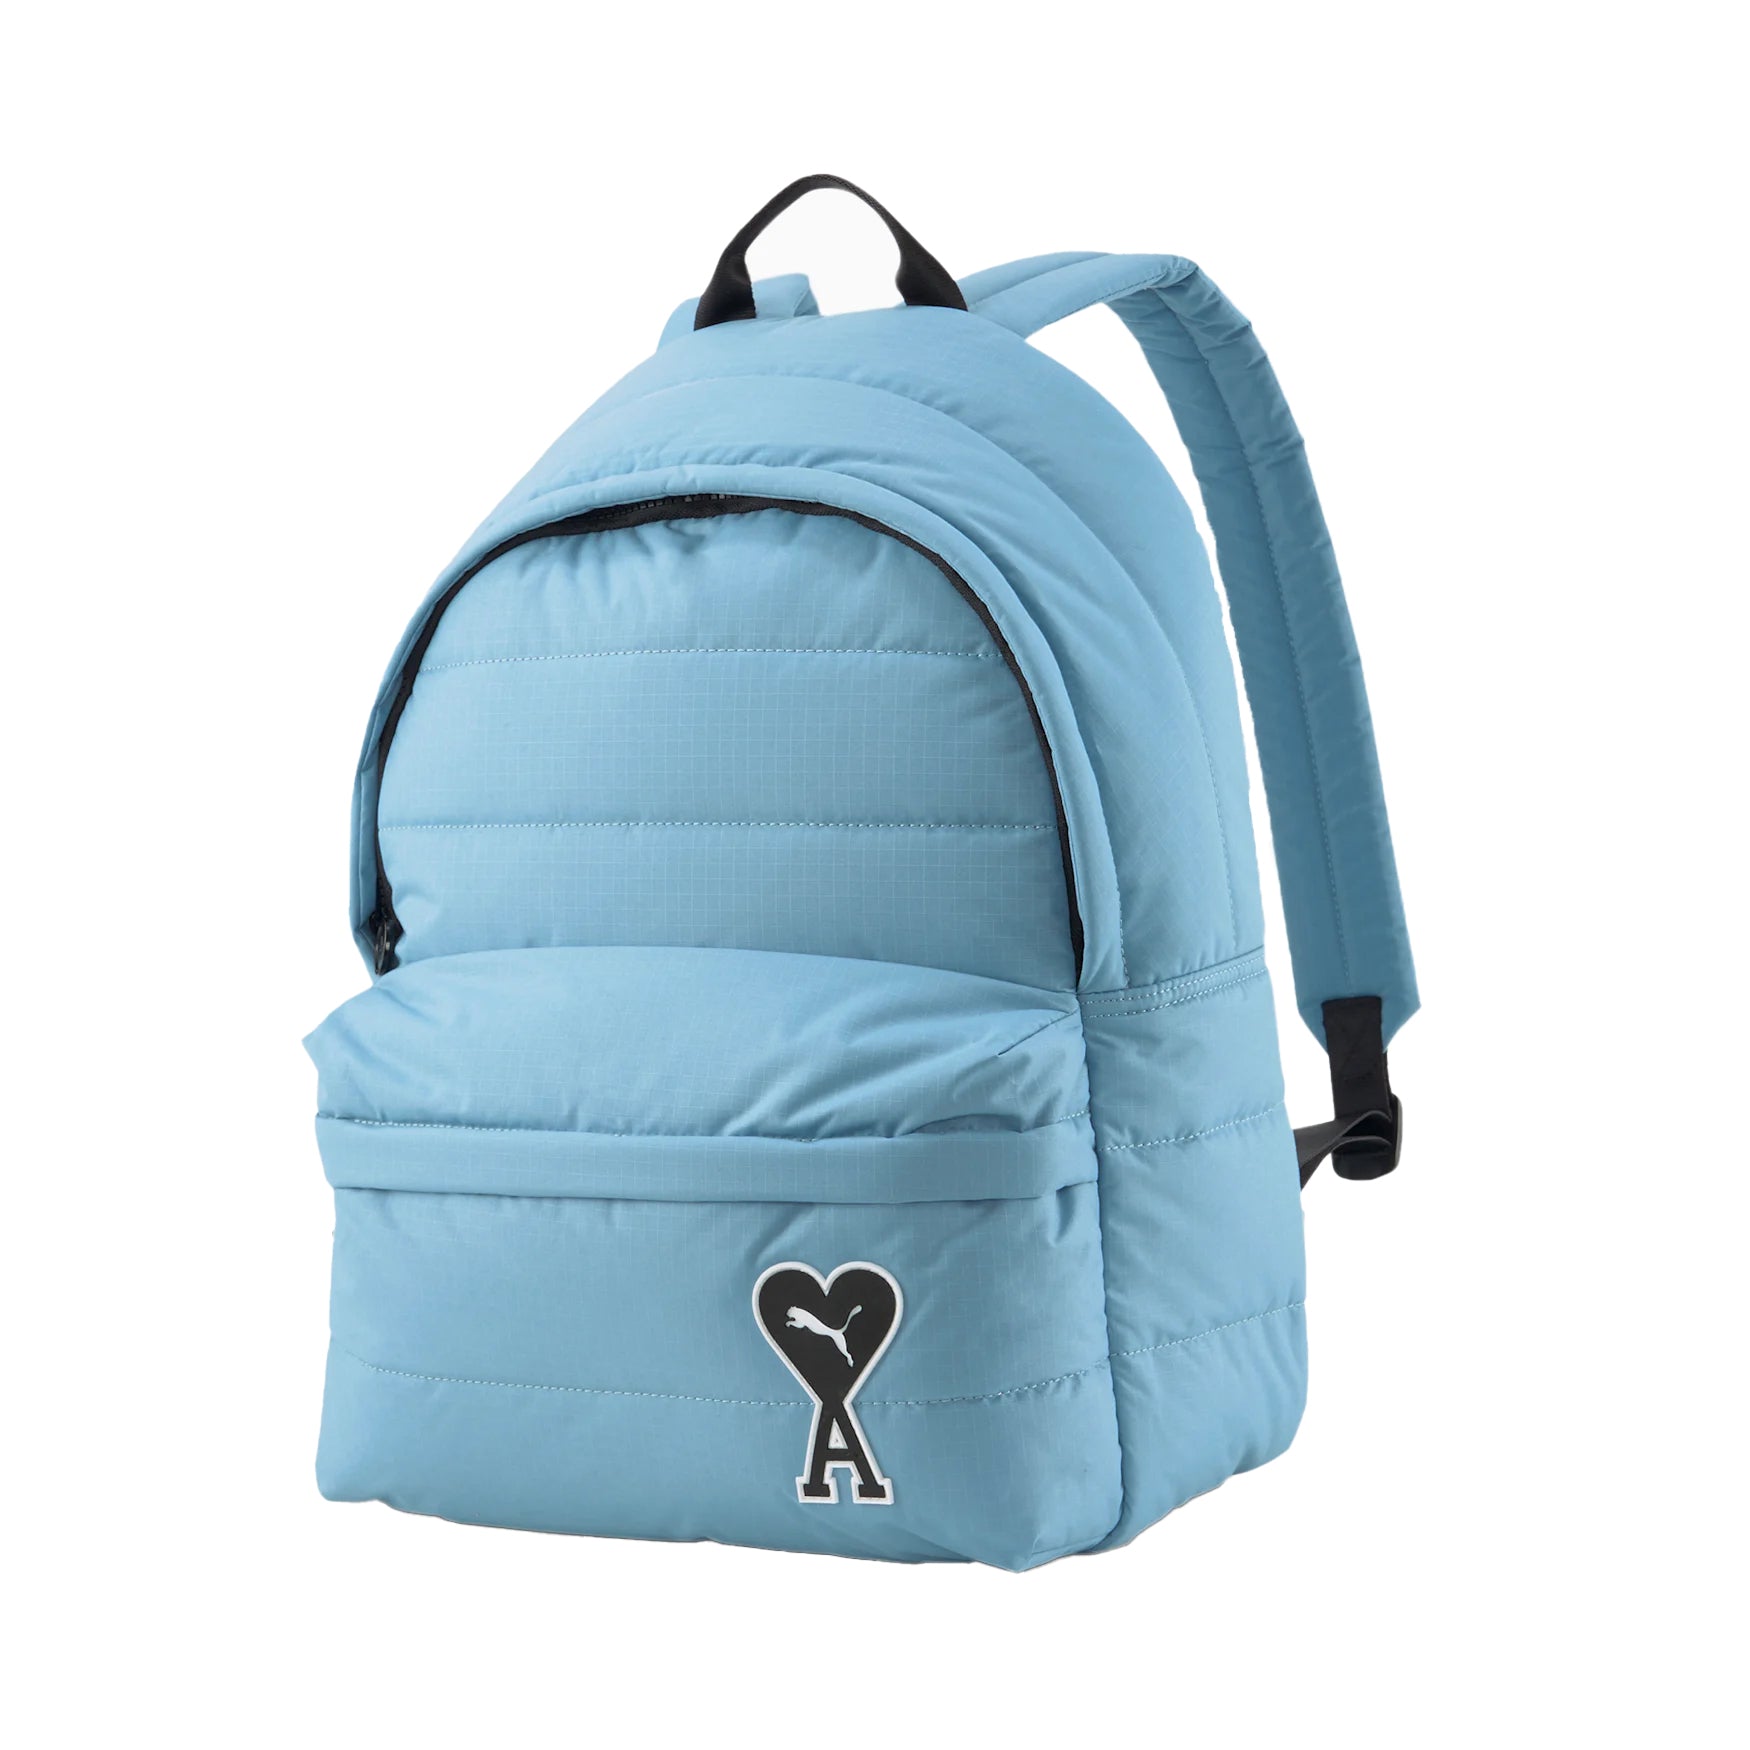 Puma x AMI Backpack Blue